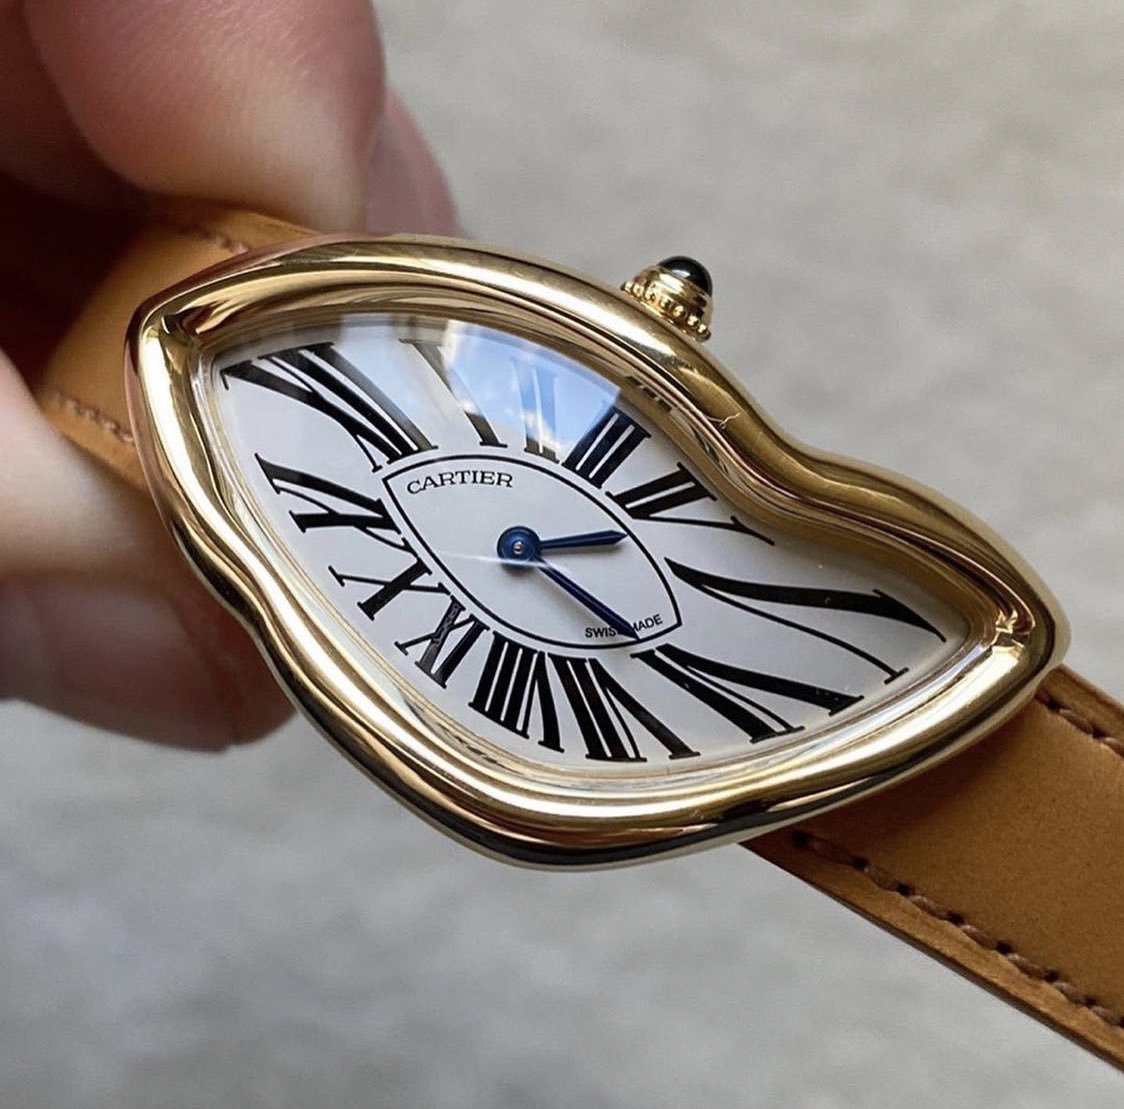 Гнутые часы. Cartier crash часы. Cartier Dali watch. Cartier часы a144. Часы Cartier a108.